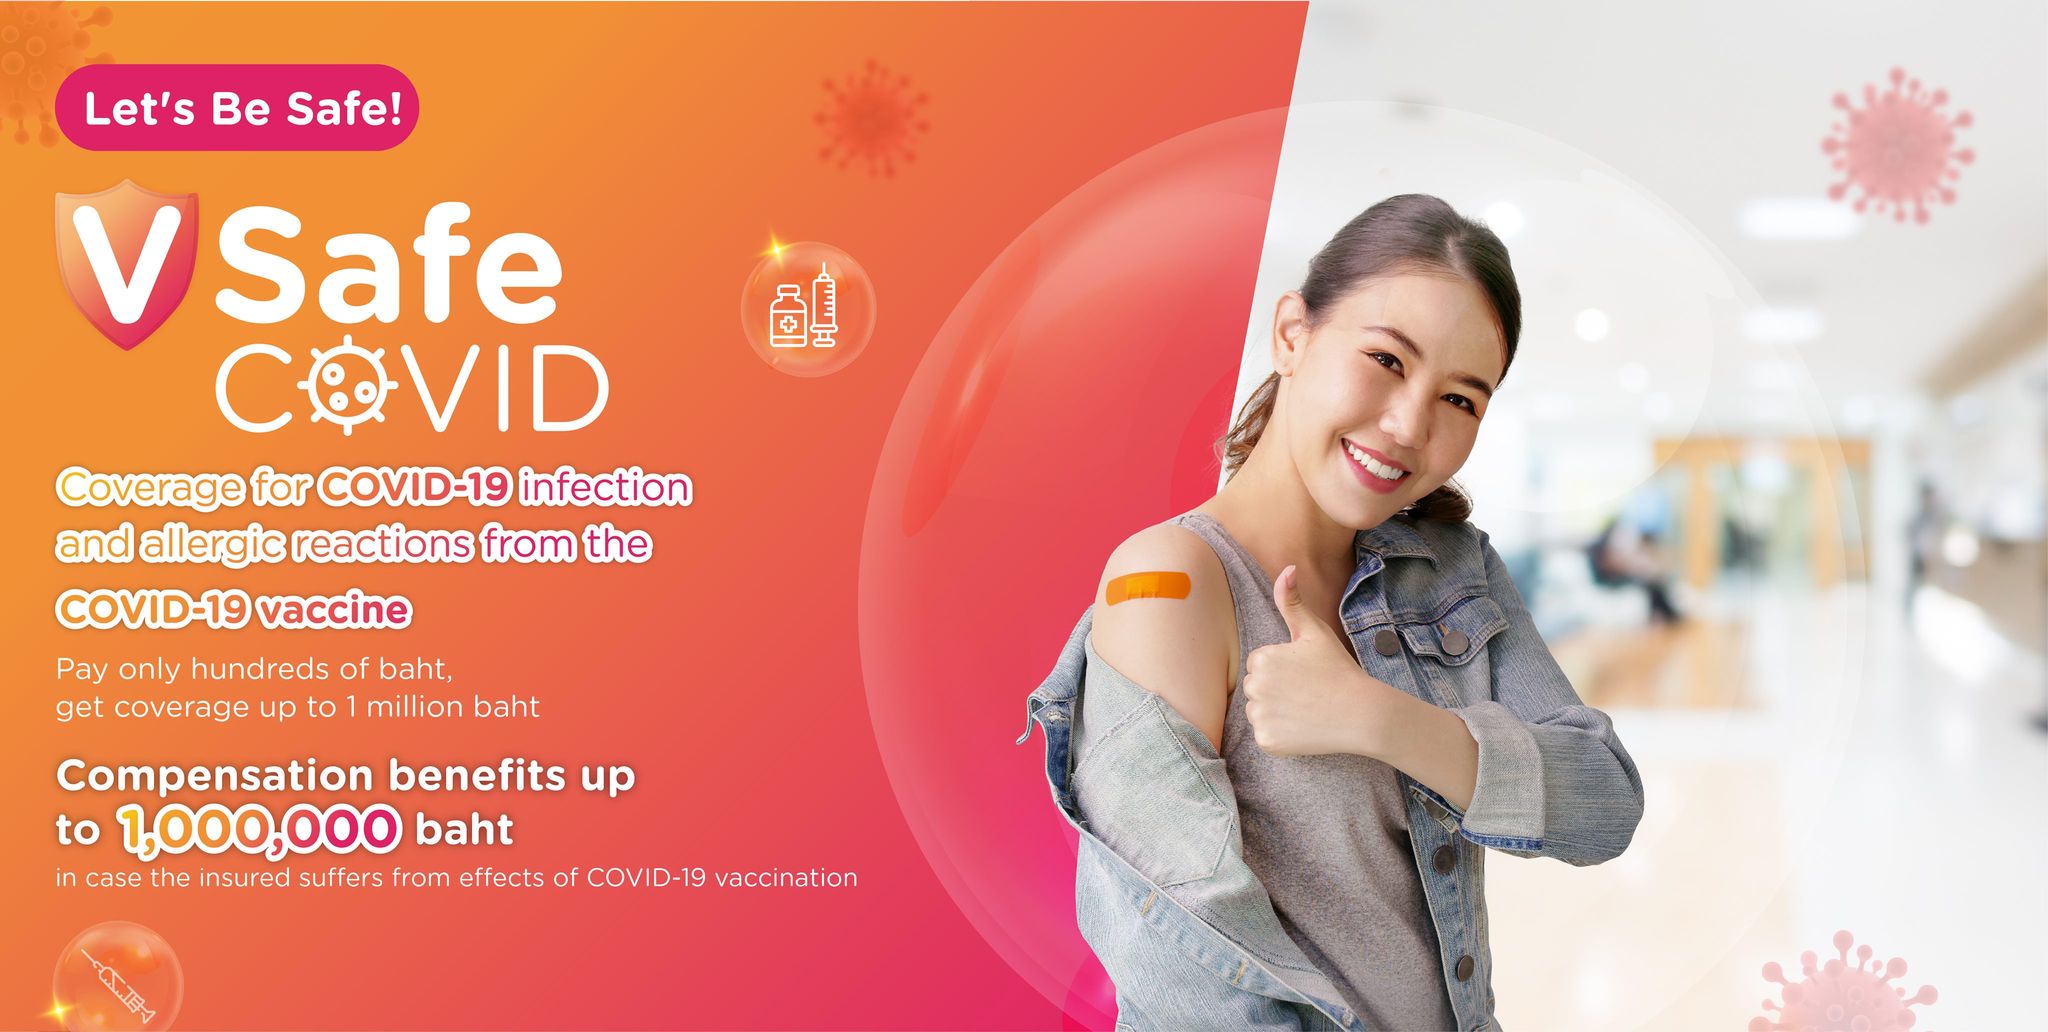 थाइल्याण्डमा कोरोना खोपको एलर्जी विरुद्ध क्षतिपूर्ती दिने बीमा योजना लोकप्रिय बन्दै